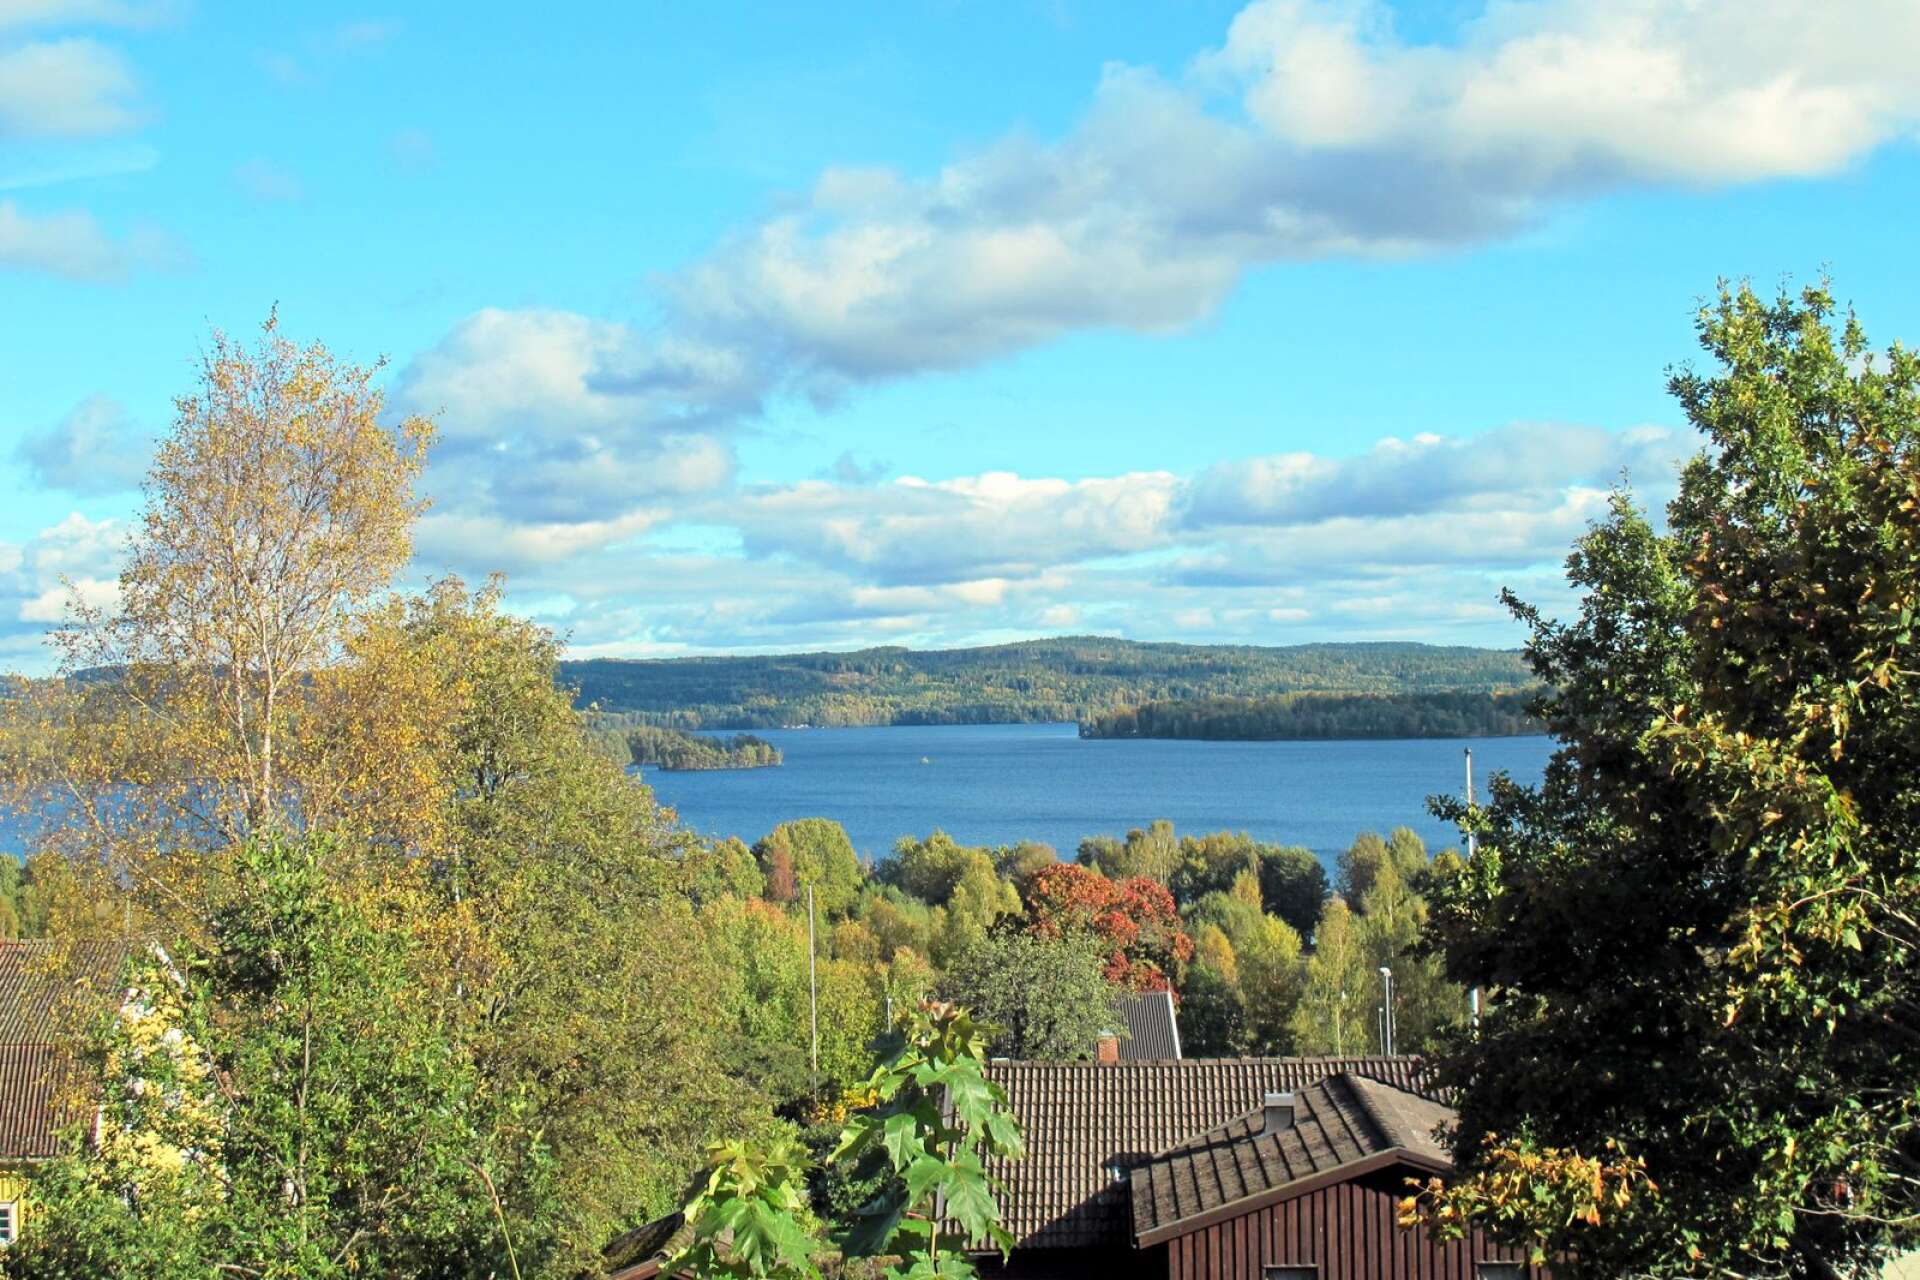 Utveckla attraktiviteten i Billingsfors som bostadsort, manar skribenten i inlägget, Bilden visar utsikt över Laxsjön.